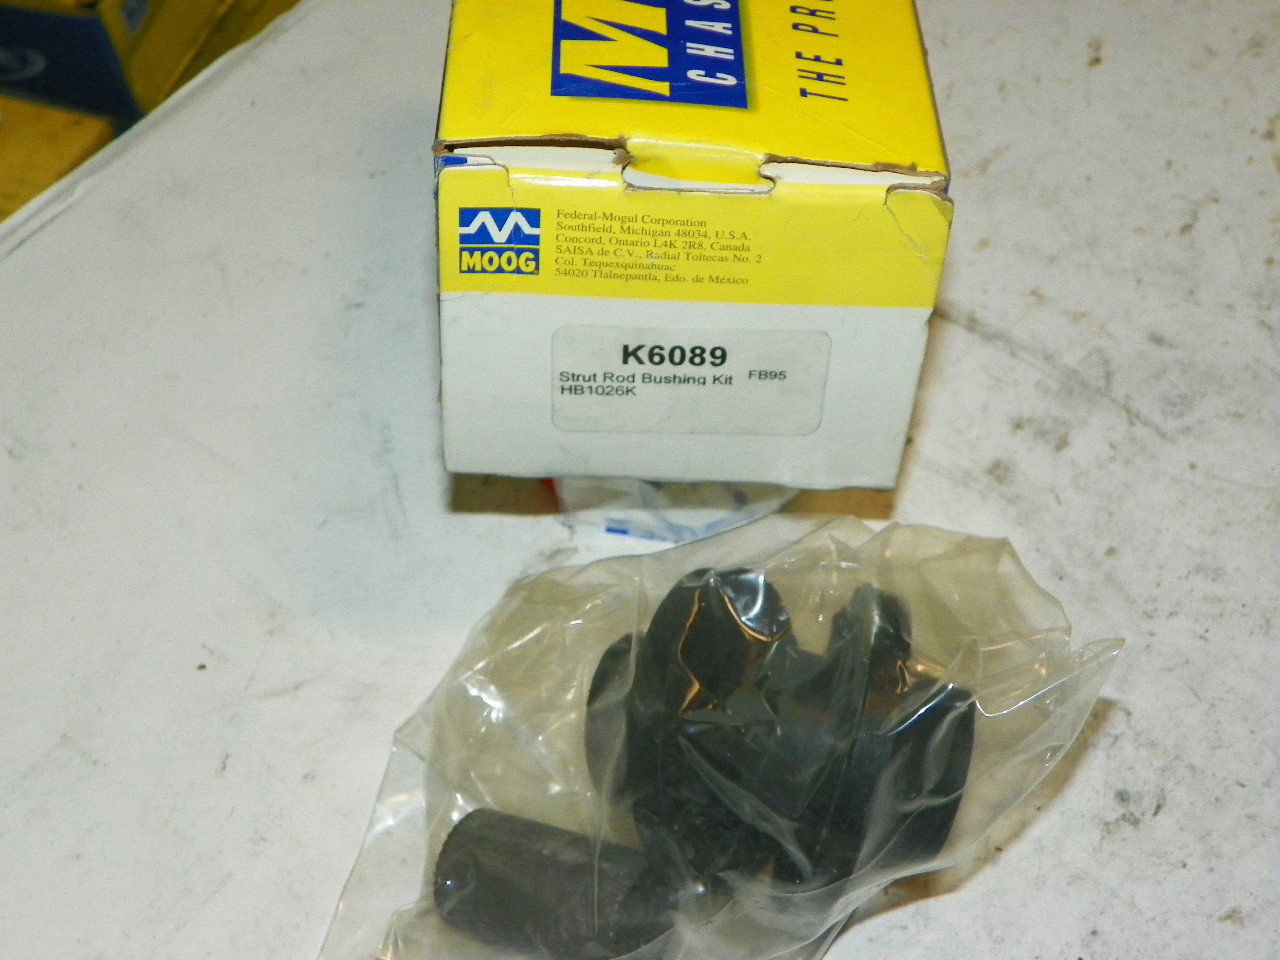 Strut Rod Bushing Kit Moog K-6089 Made in USA